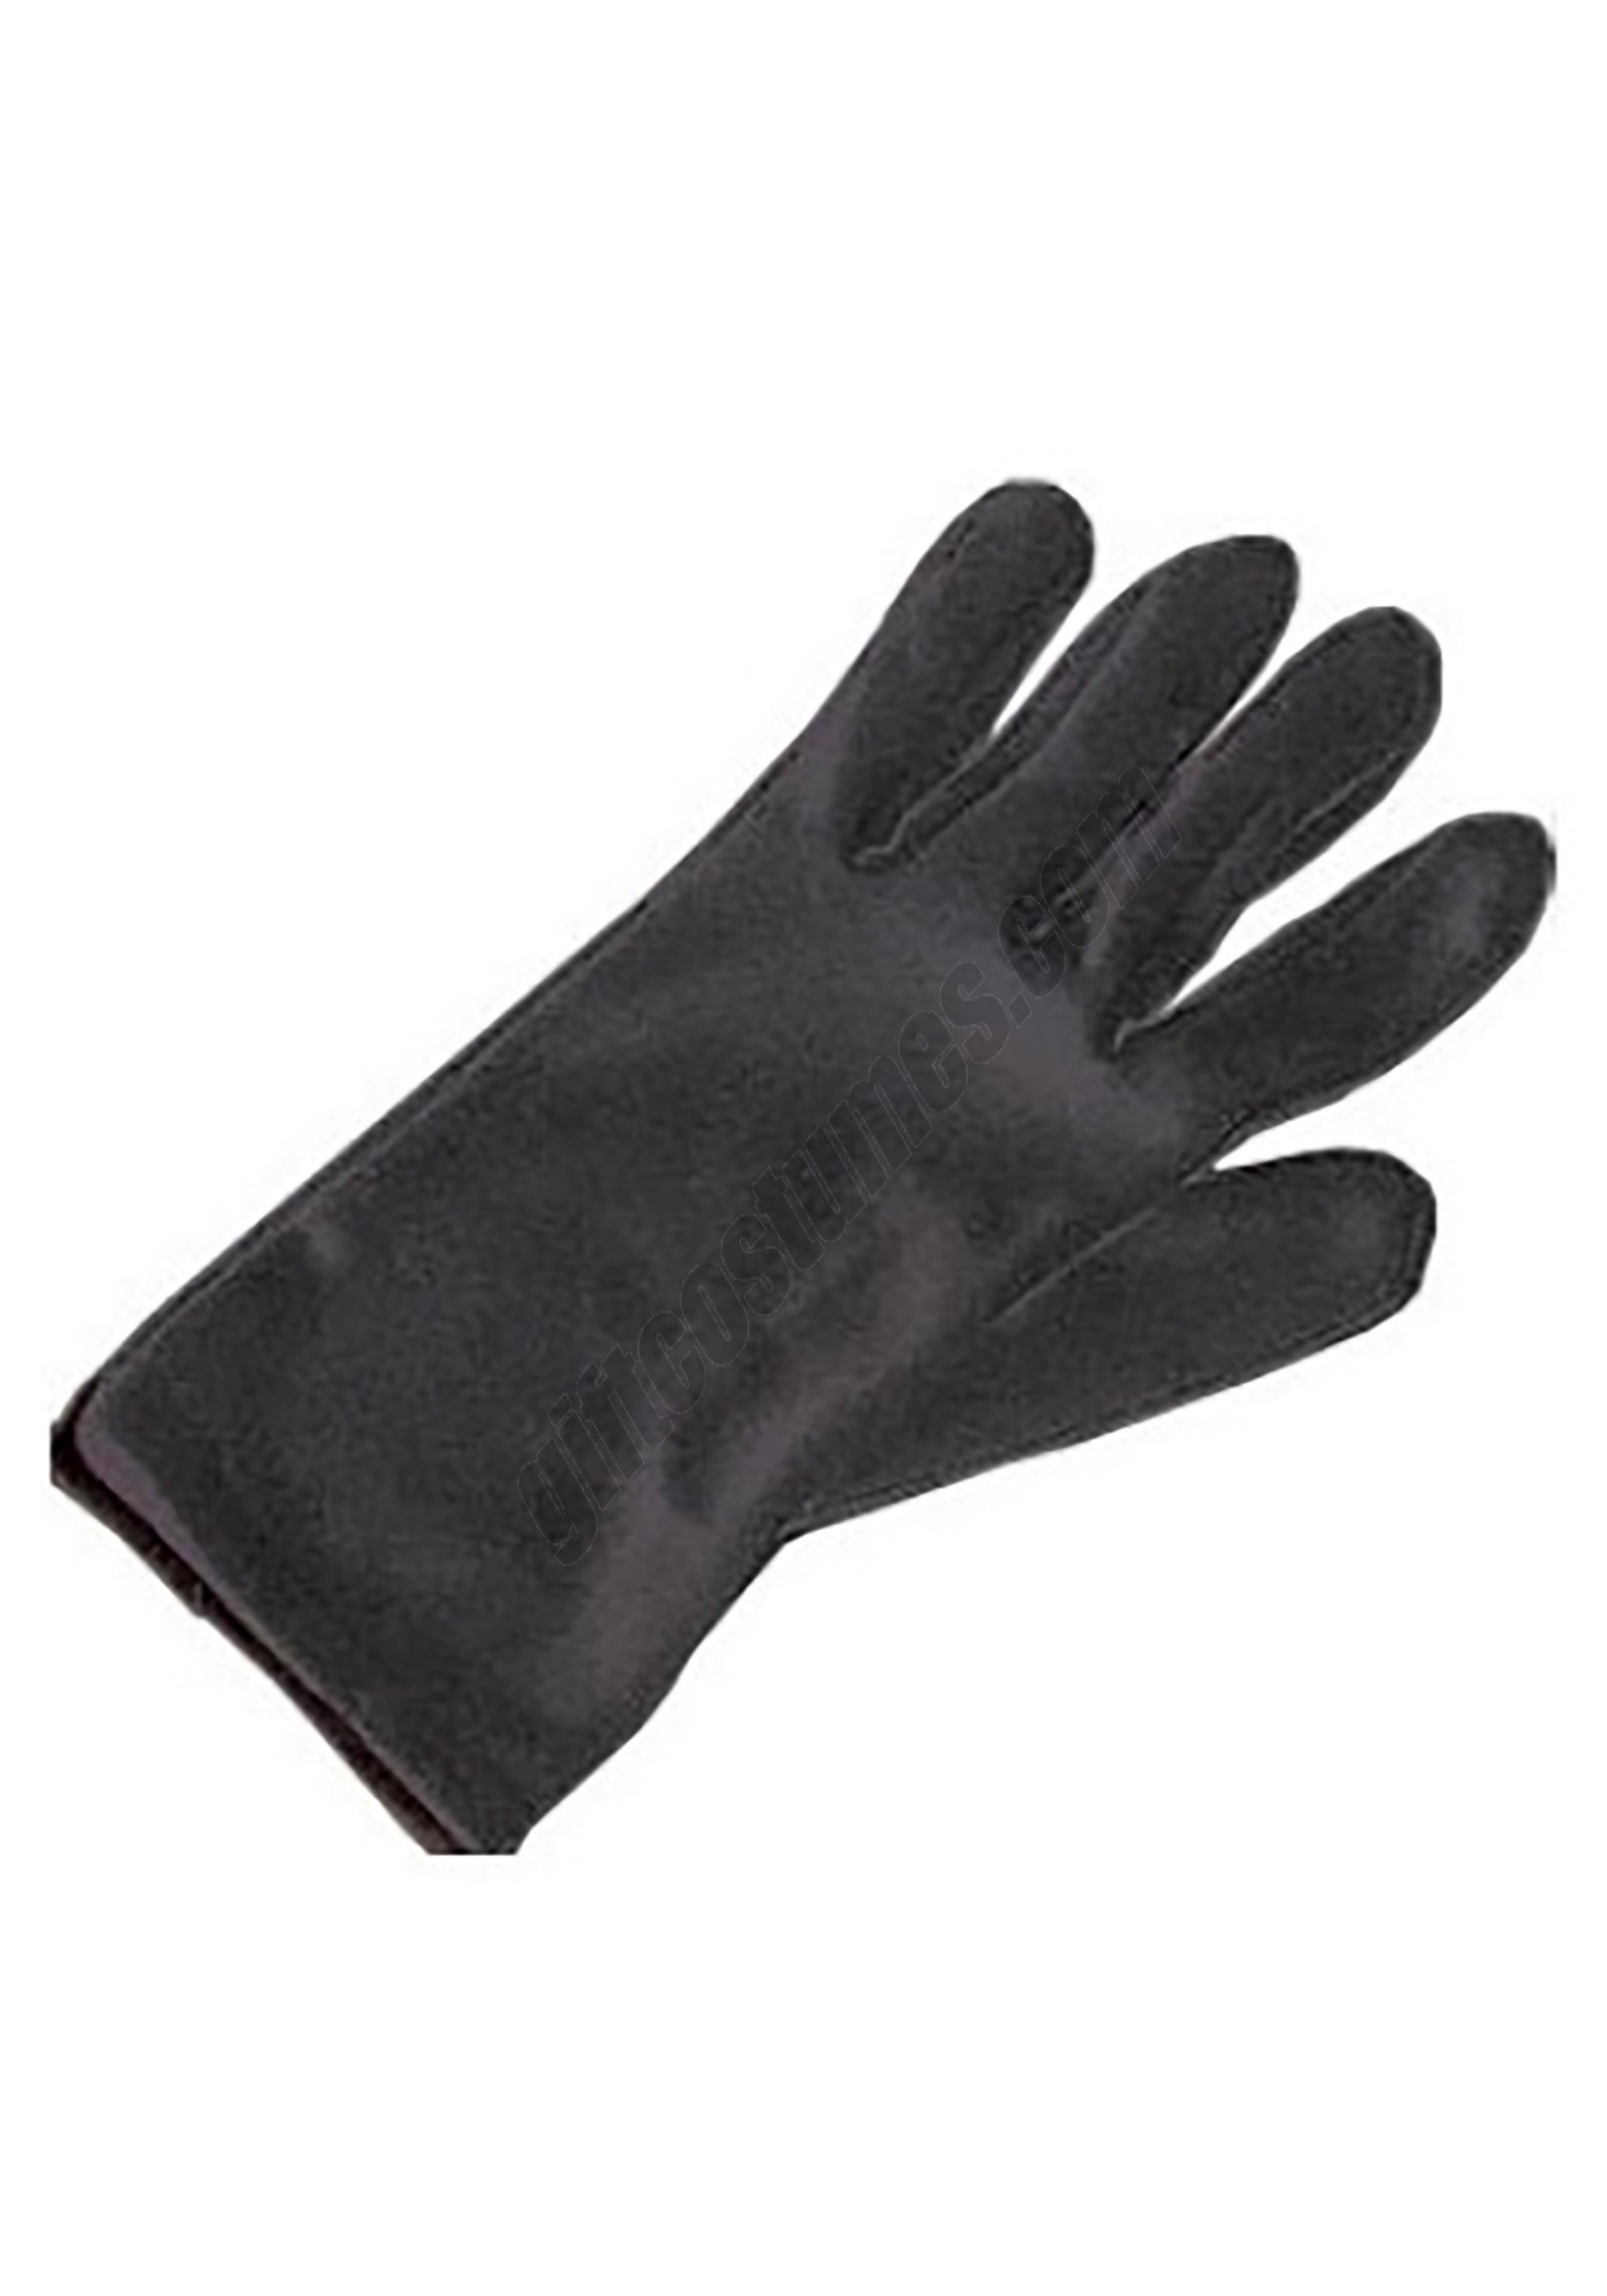 Kids Black Costume Gloves Promotions - Kids Black Costume Gloves Promotions